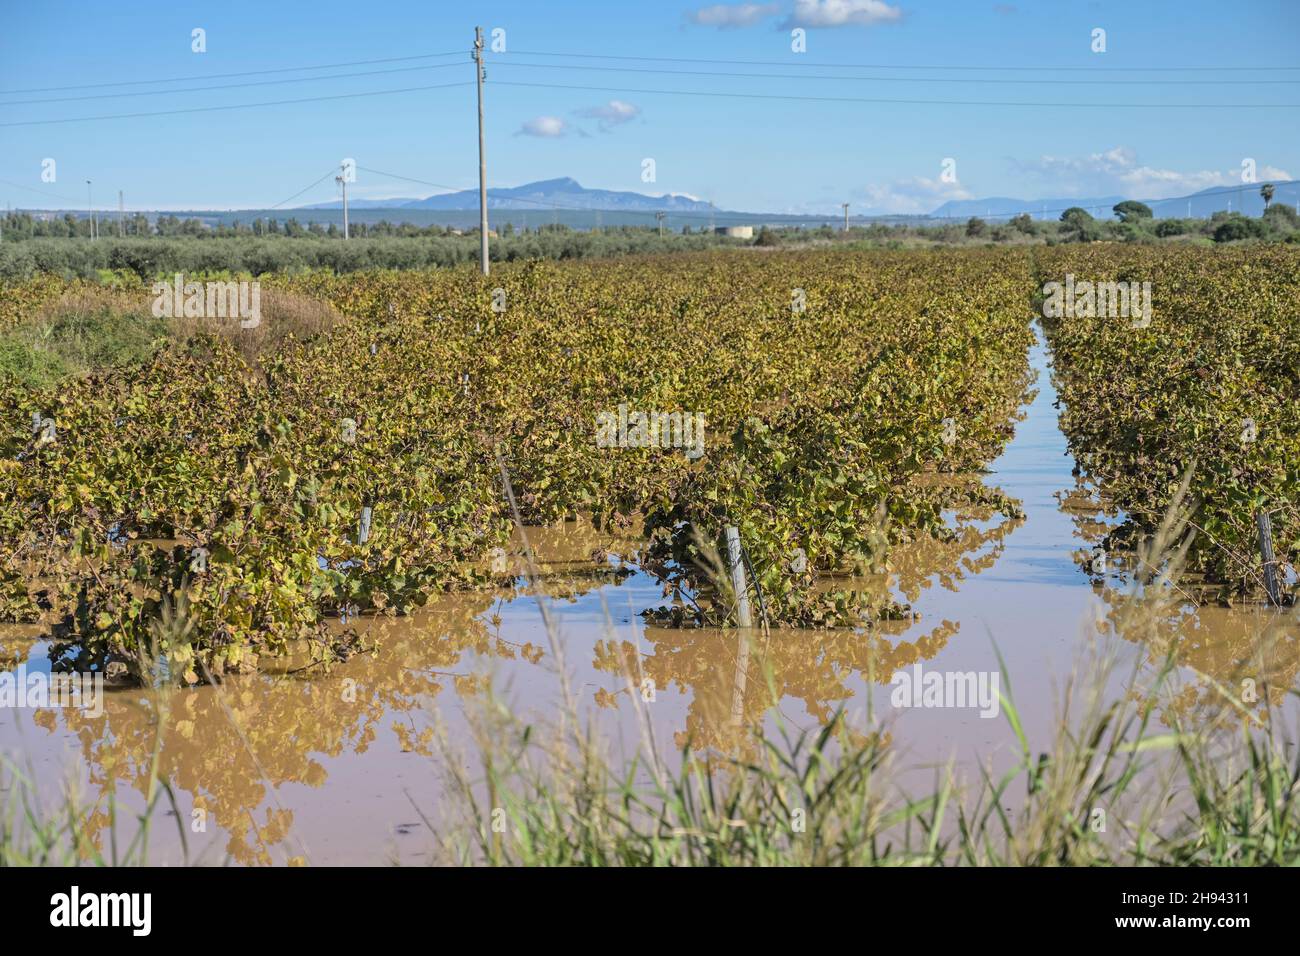 Überschwemmung wegen starker Regenfälle, Weinanbau nahe Castelvetrano, Sizilien, Italien Stock Photo